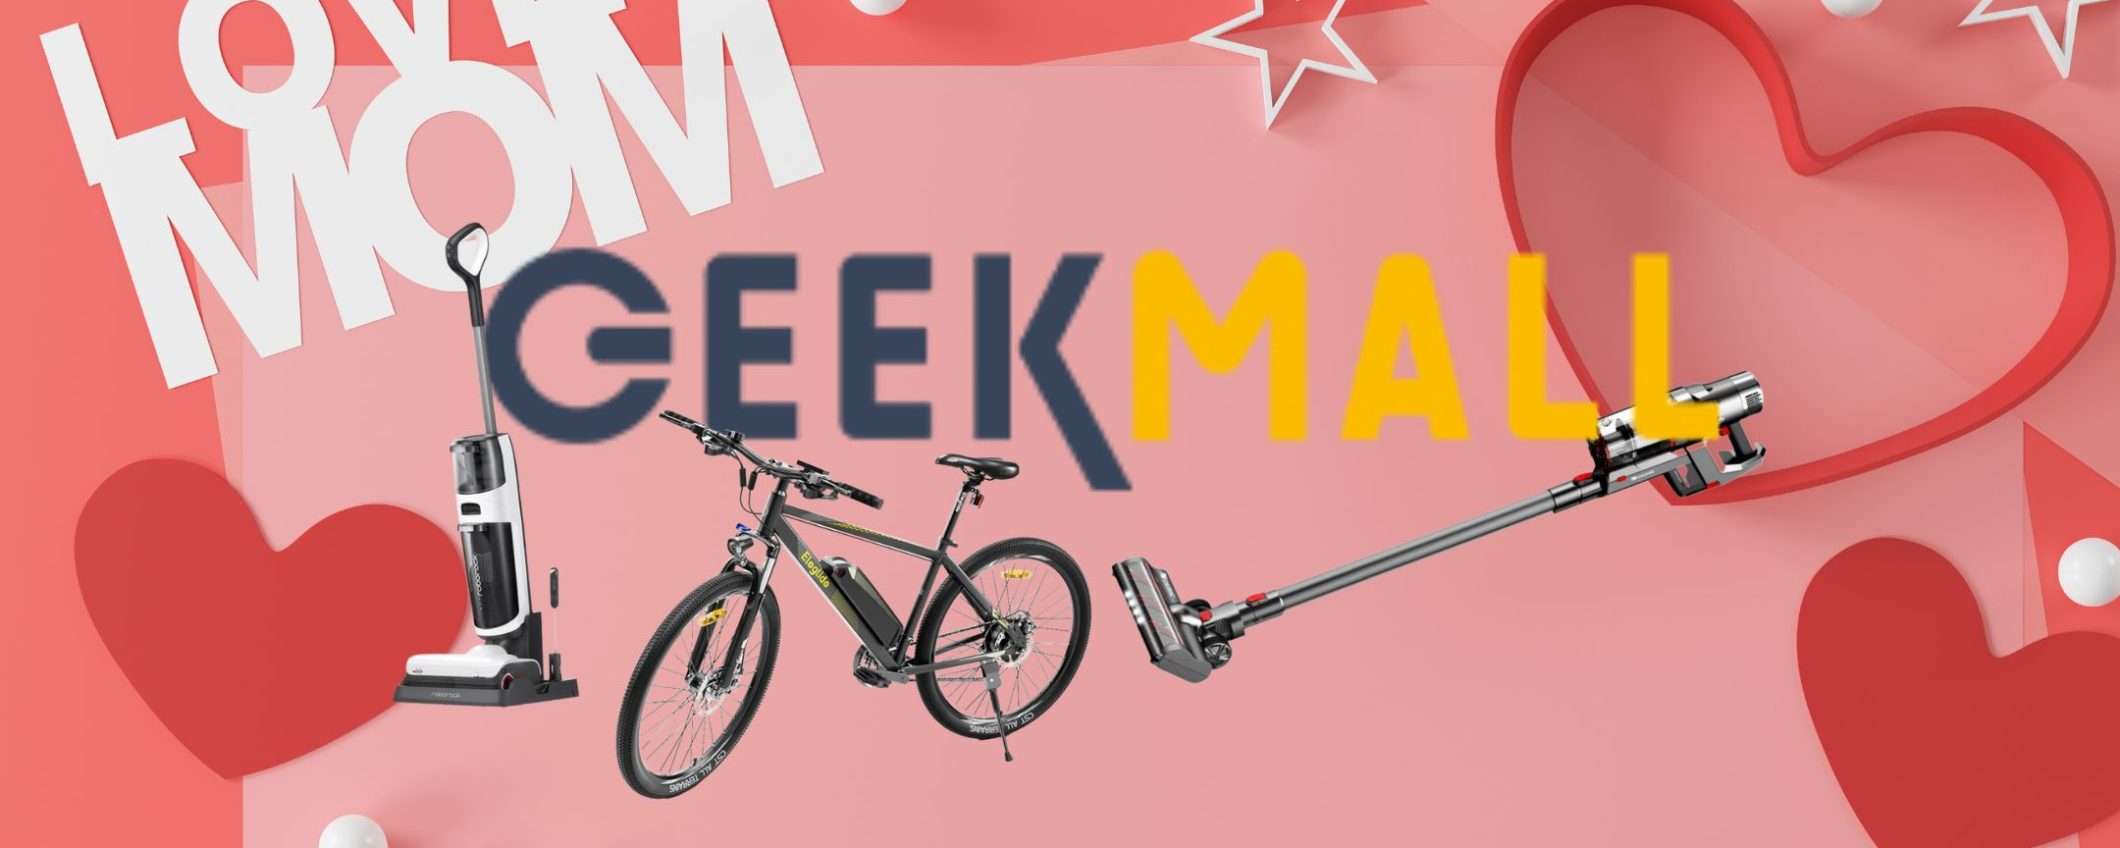 GeekMall celebra la mamma con sconti fino al 60%: elettronica a mini prezzo